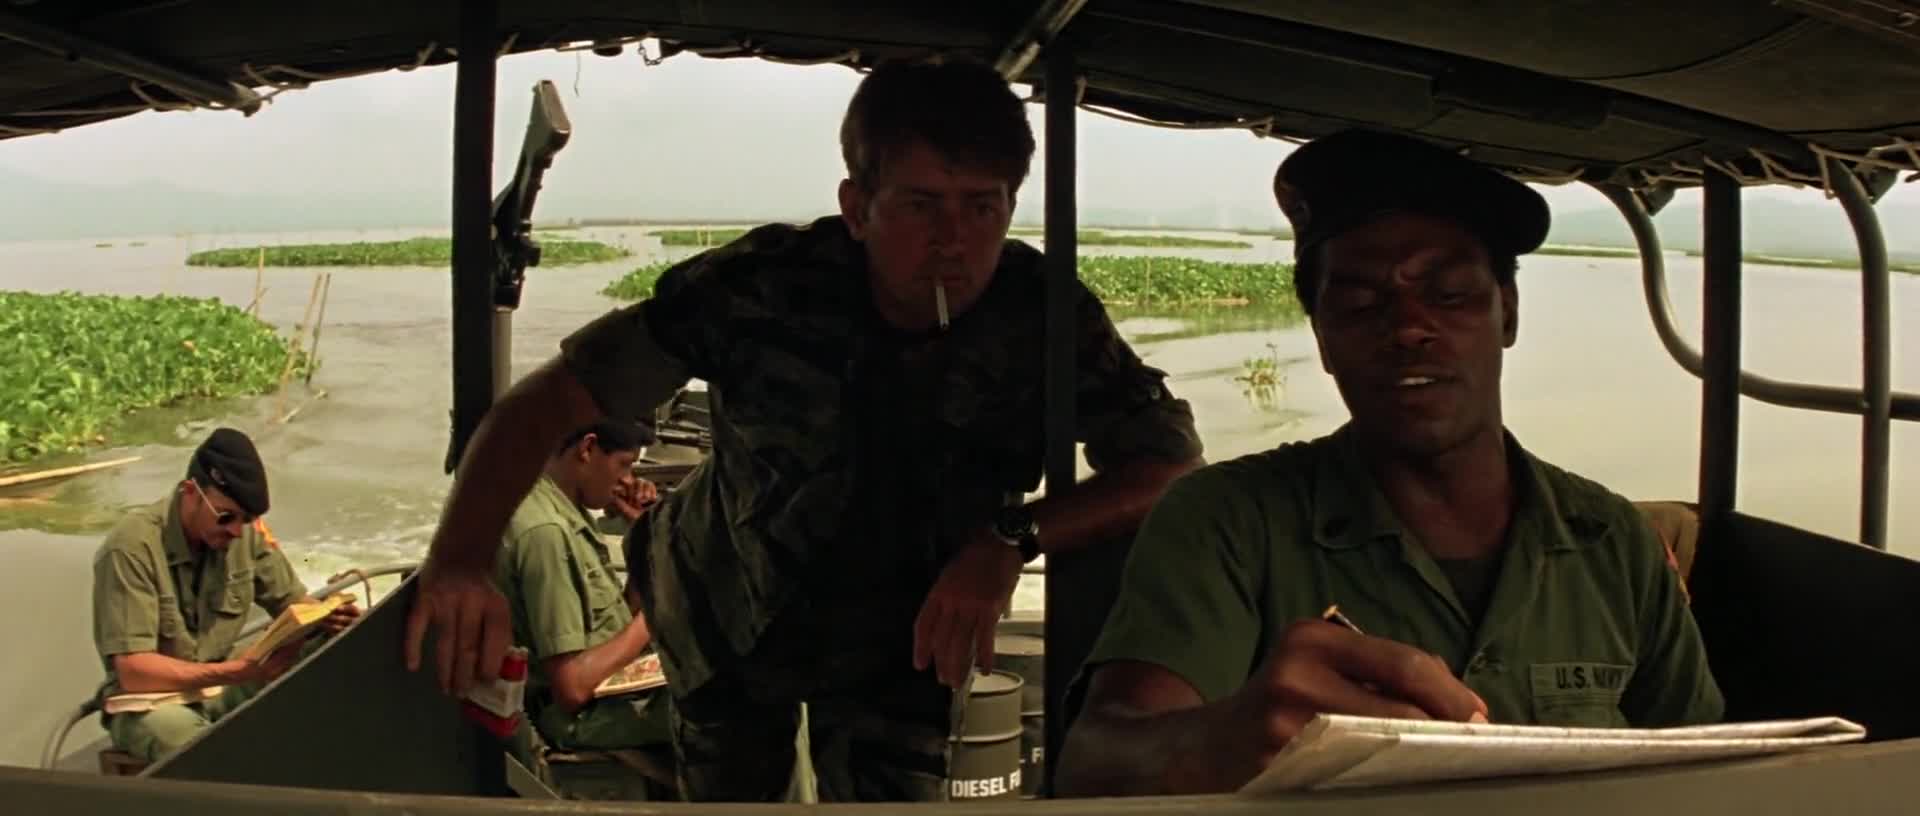 Apokalypsa (Martin Sheen,Marlon Brando,Robert Duvall 1979 Drama Válečný 1080p ) Cz dabing mkv